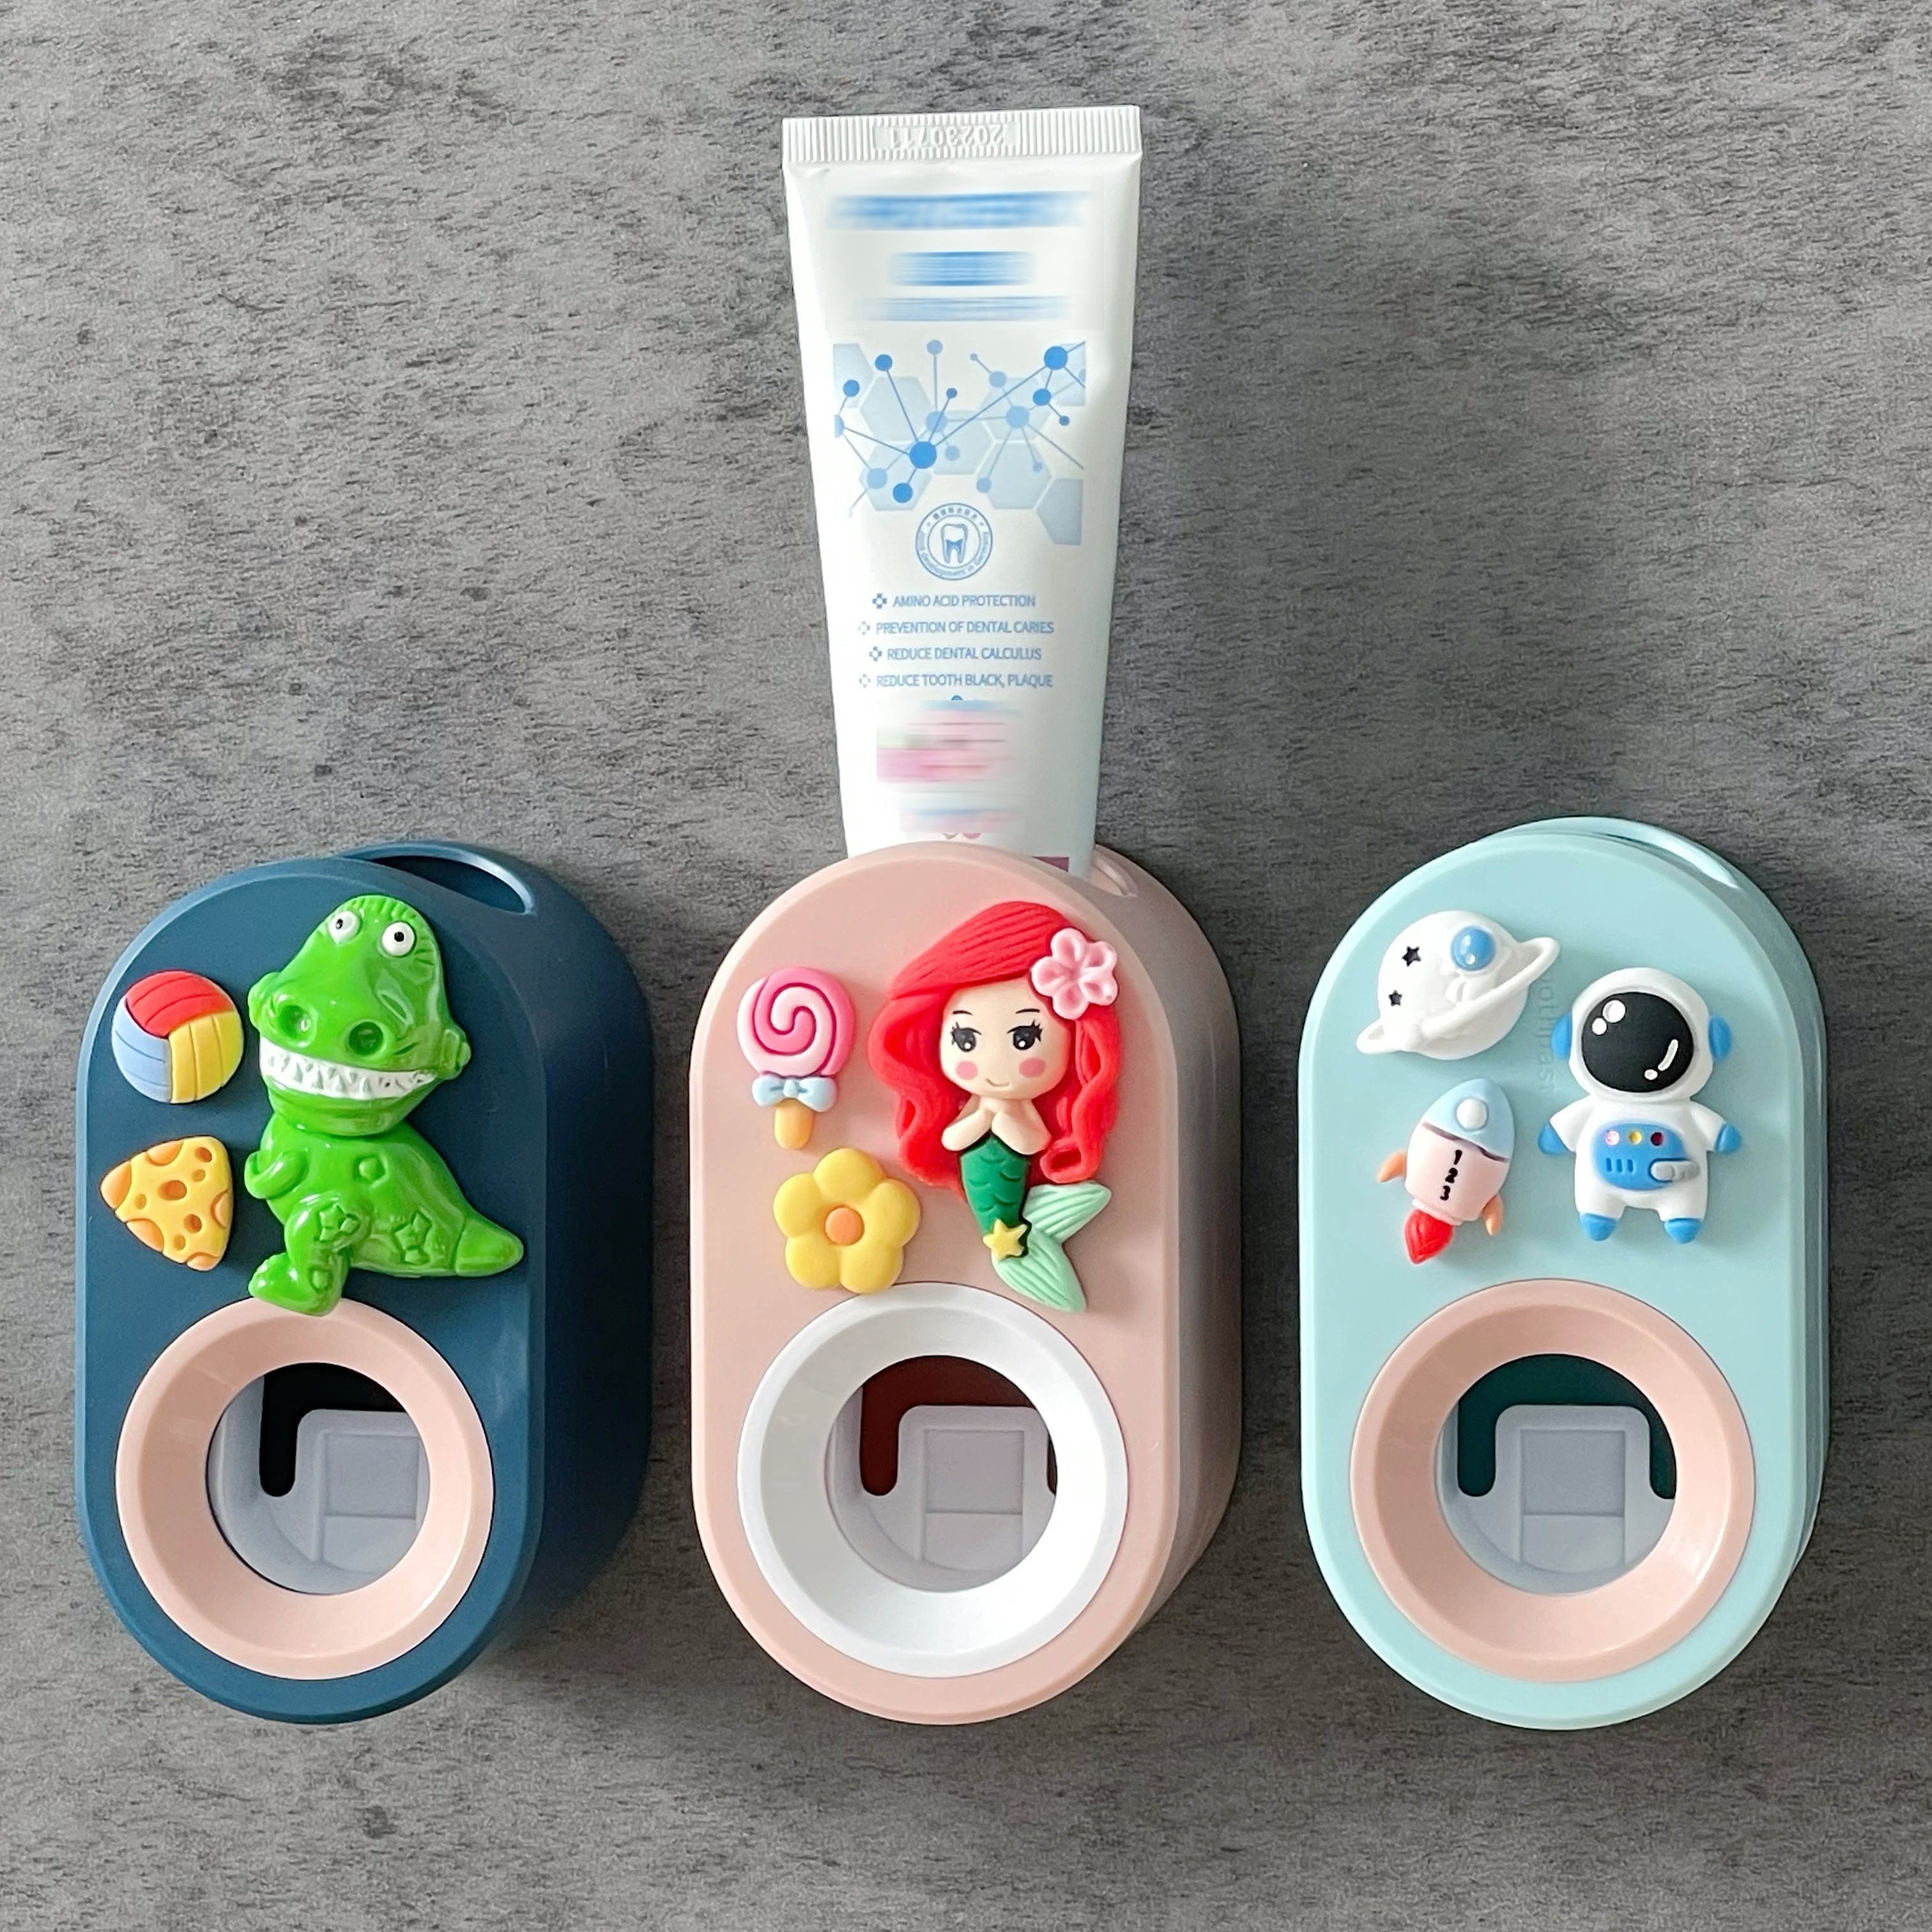 3 uds exprimidor de pasta de dientes accesorios de baño, dispensador de  pasta de dientes juego de baño, exprimidor de tubo rodante para pasta de  dient